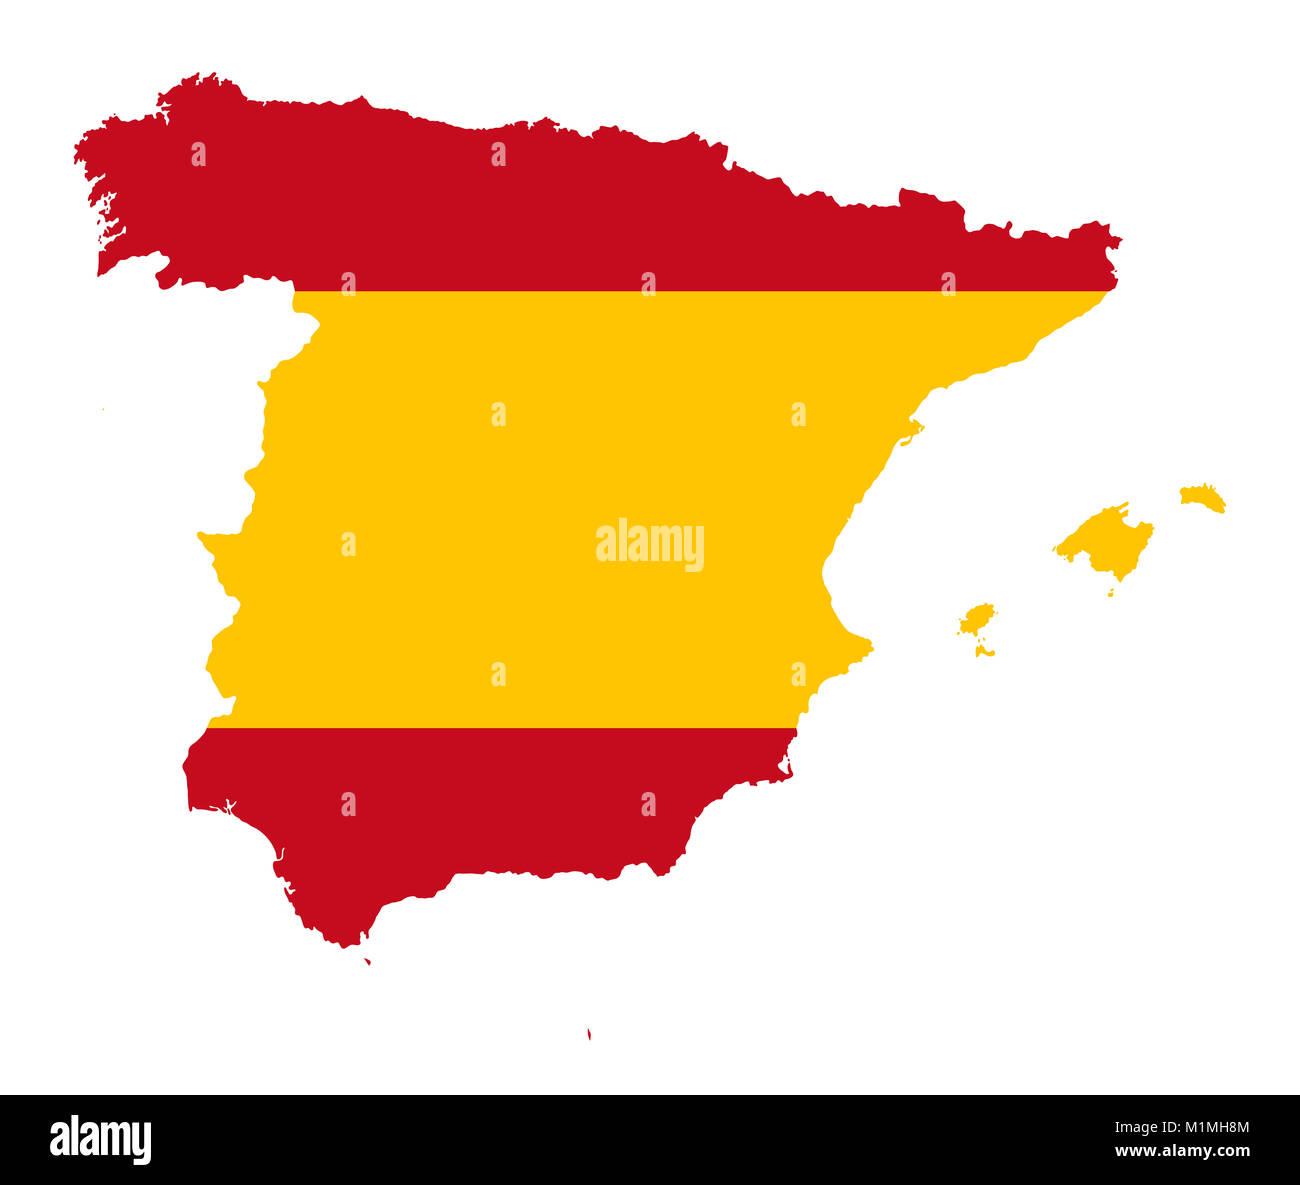 Regno di Spagna. Bandiera in silhouette di paese. Continente e frontiere come contorno. I colori della nazione. Banner con rosso e strisce gialle. Foto Stock